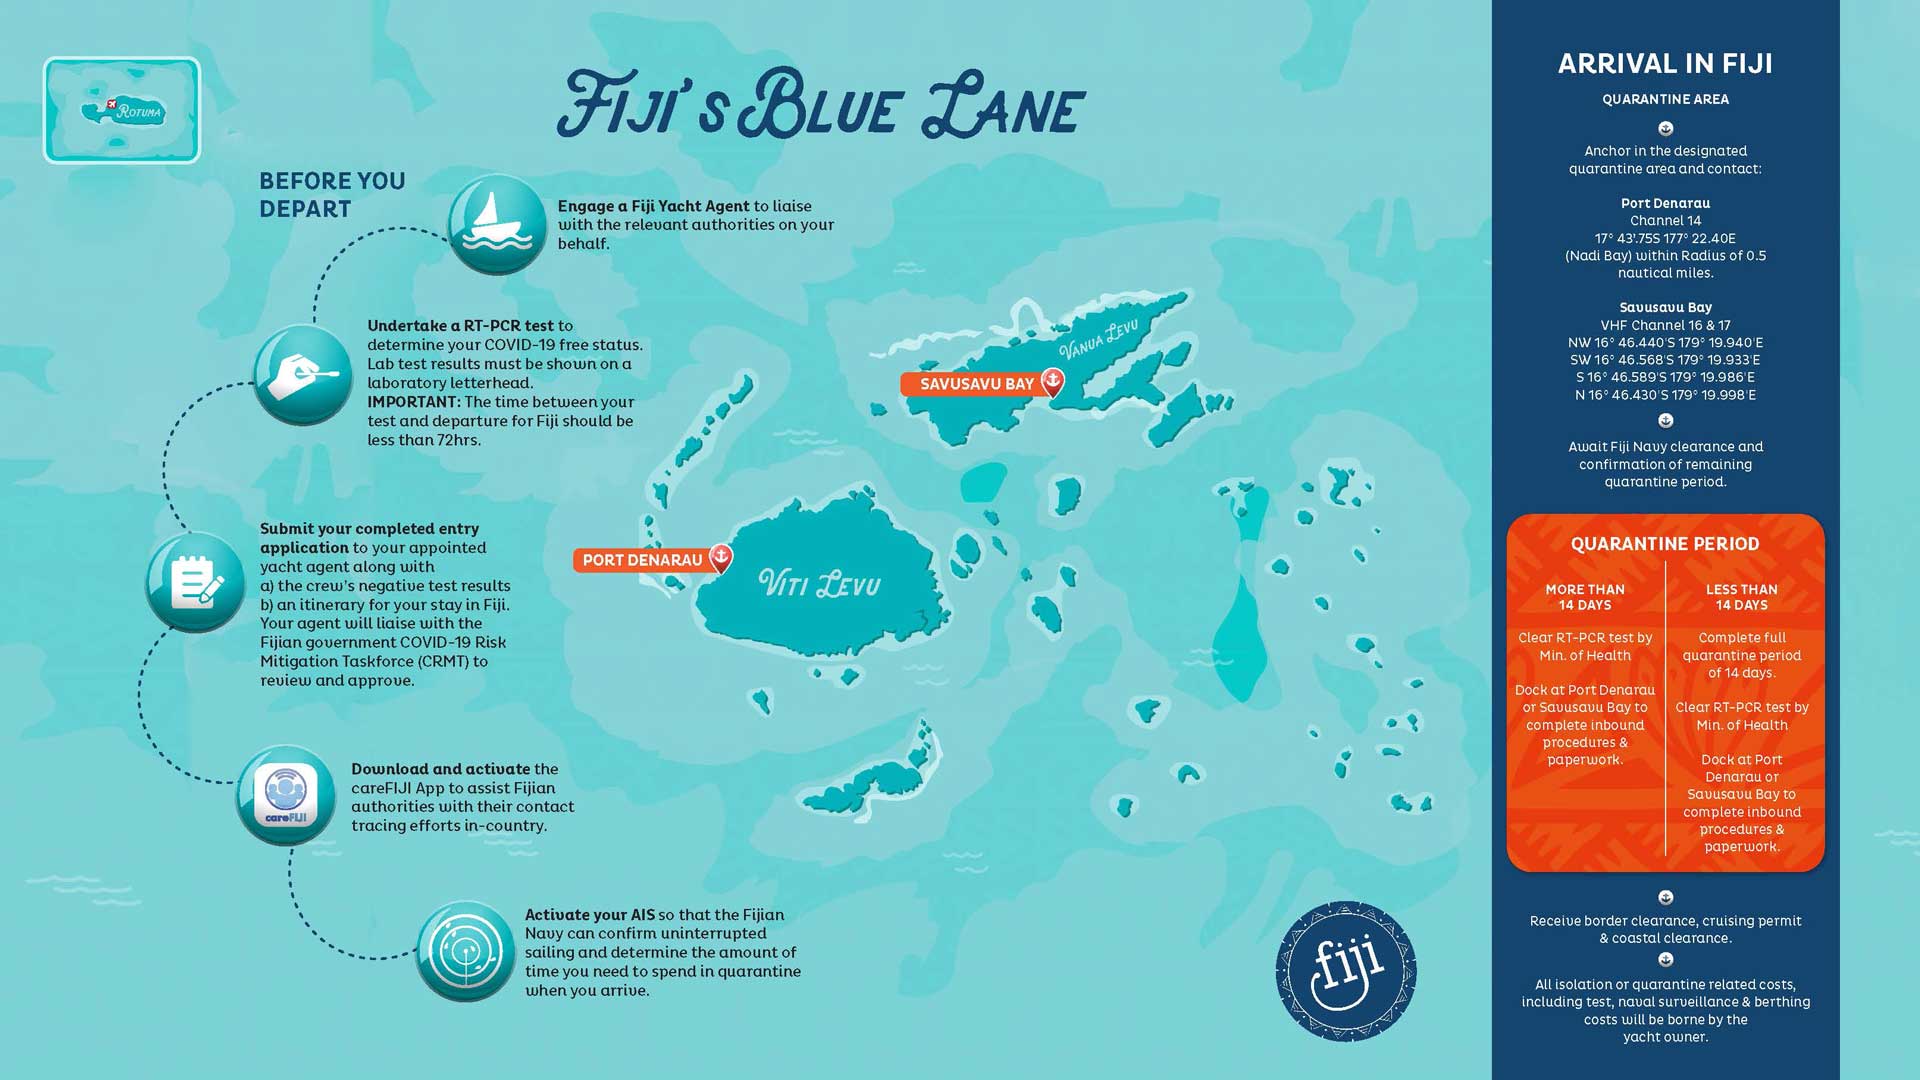 sails-fijis-blue-lanes-image